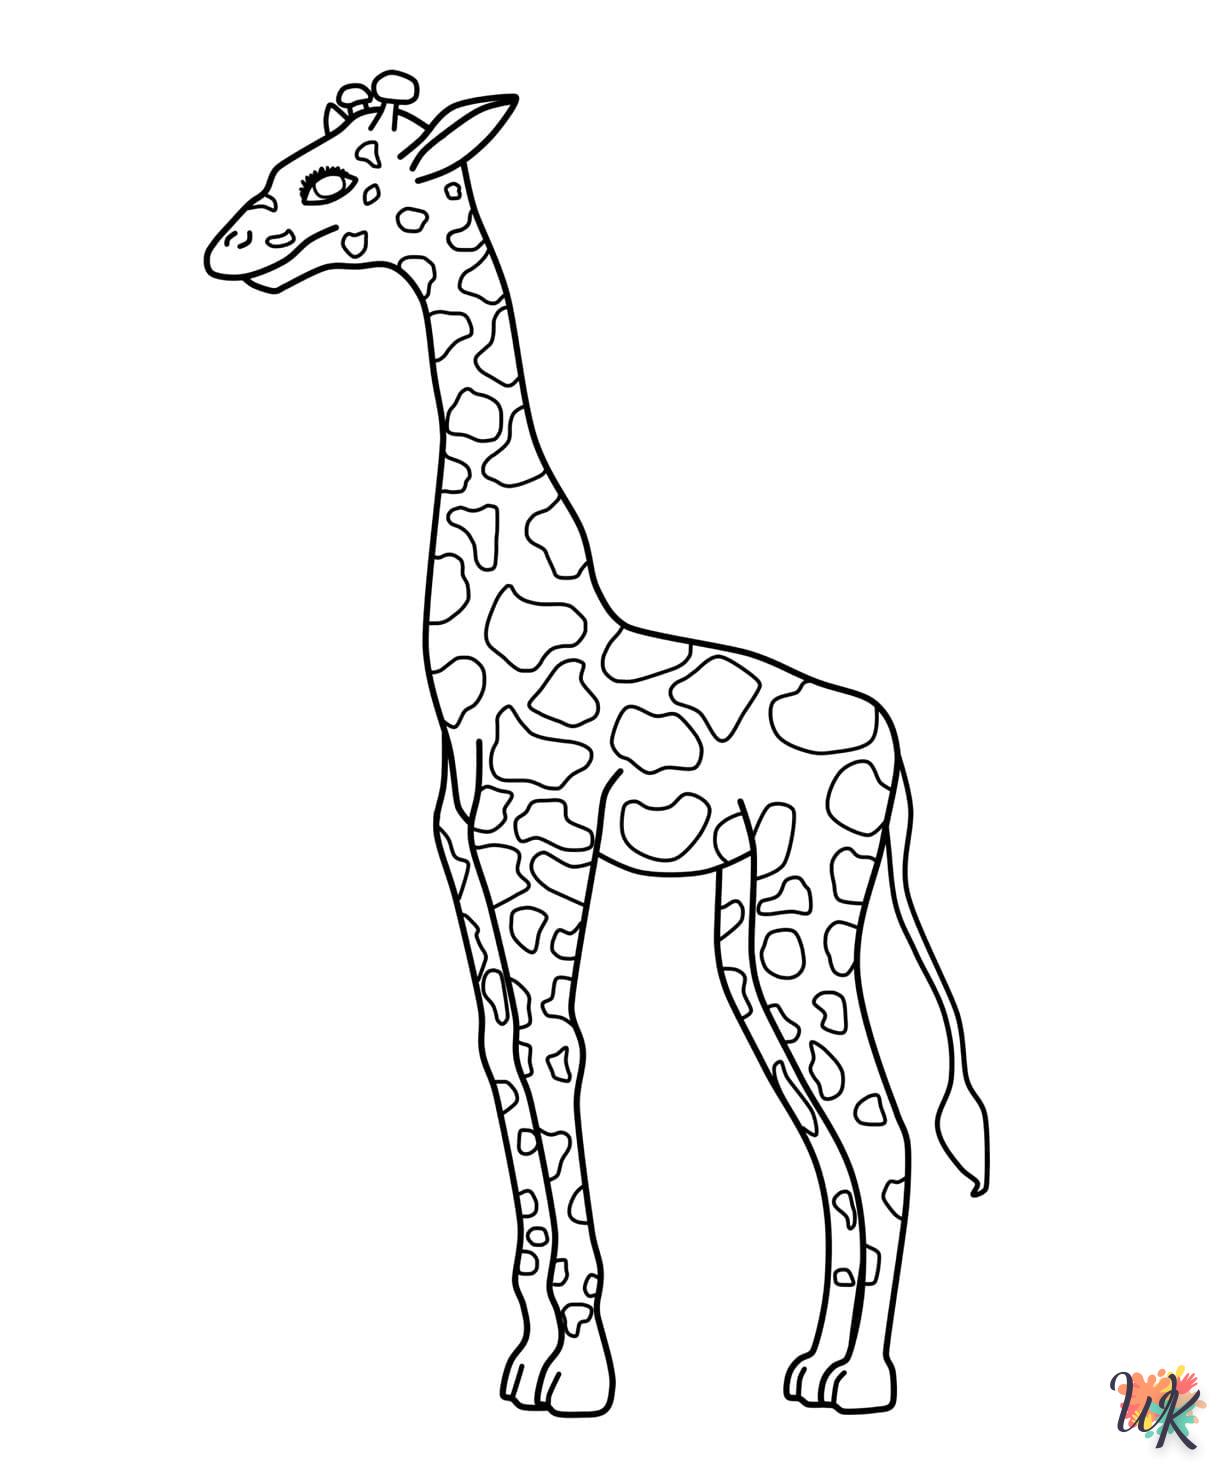 Giraffe kleurplaten12